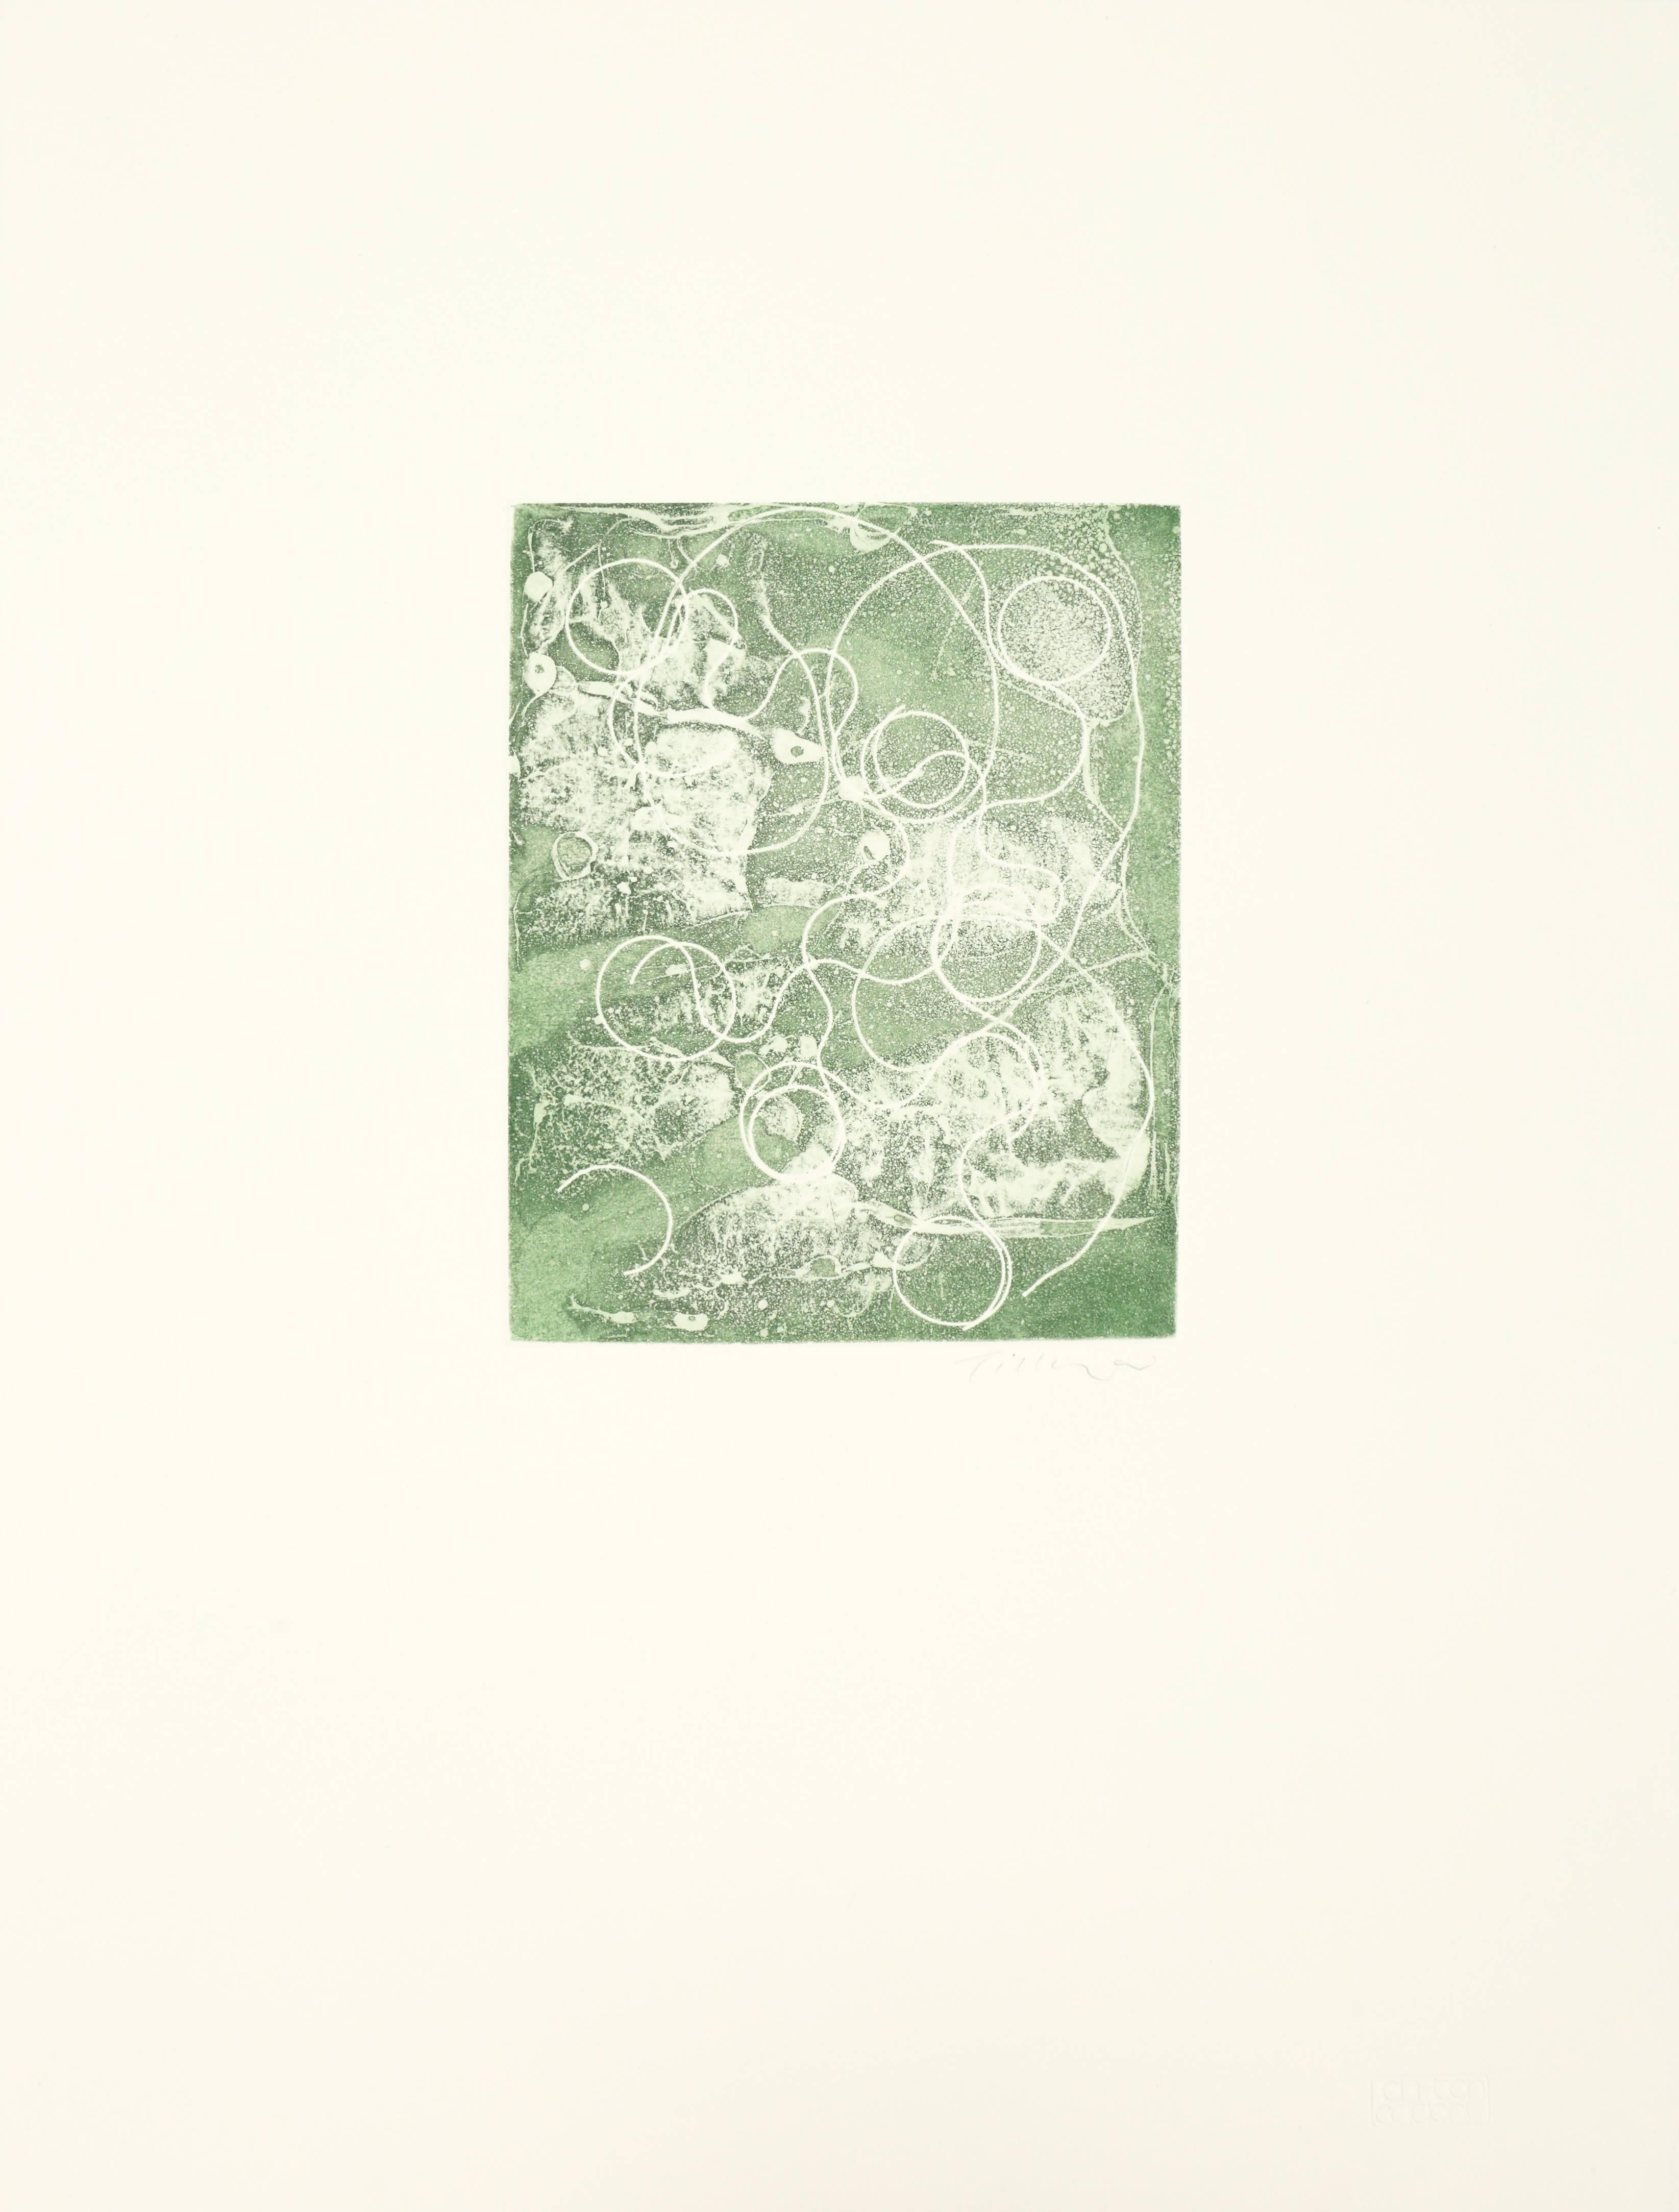 William Tillyer Abstract Print – Ahornblüte als Kontrast zur Ahornblume